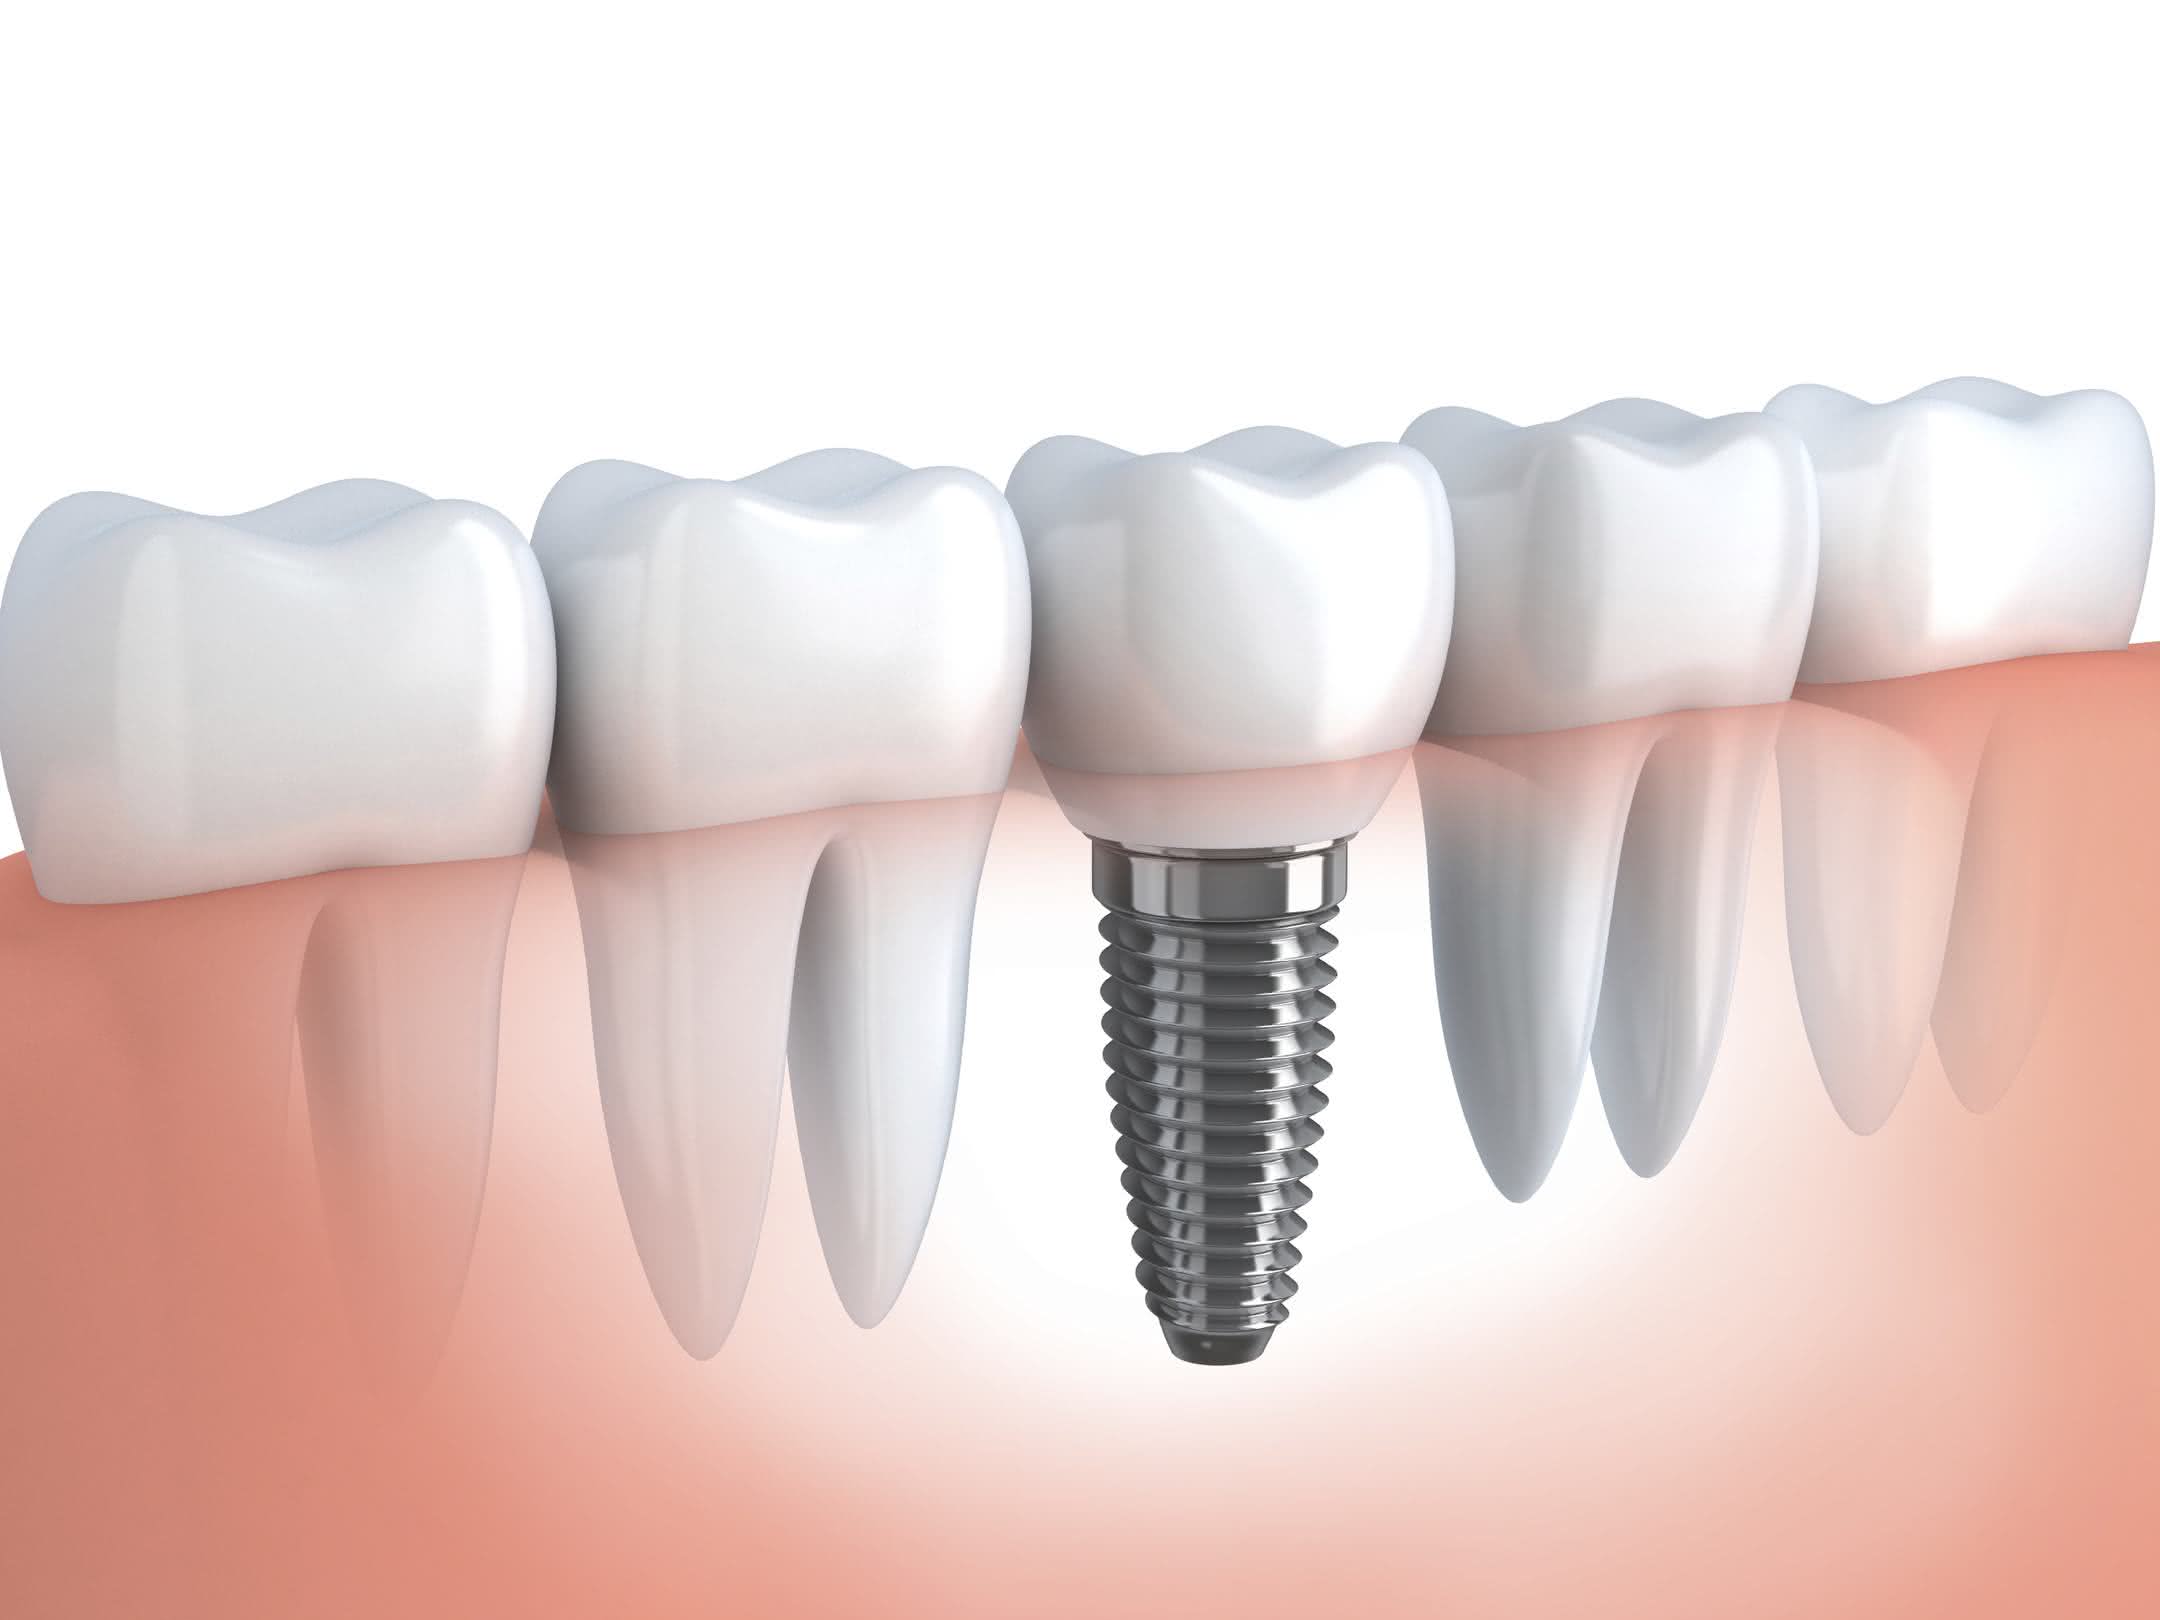 Implante Dentário: Preço Médio do Implante, Implante Gratuito e mais